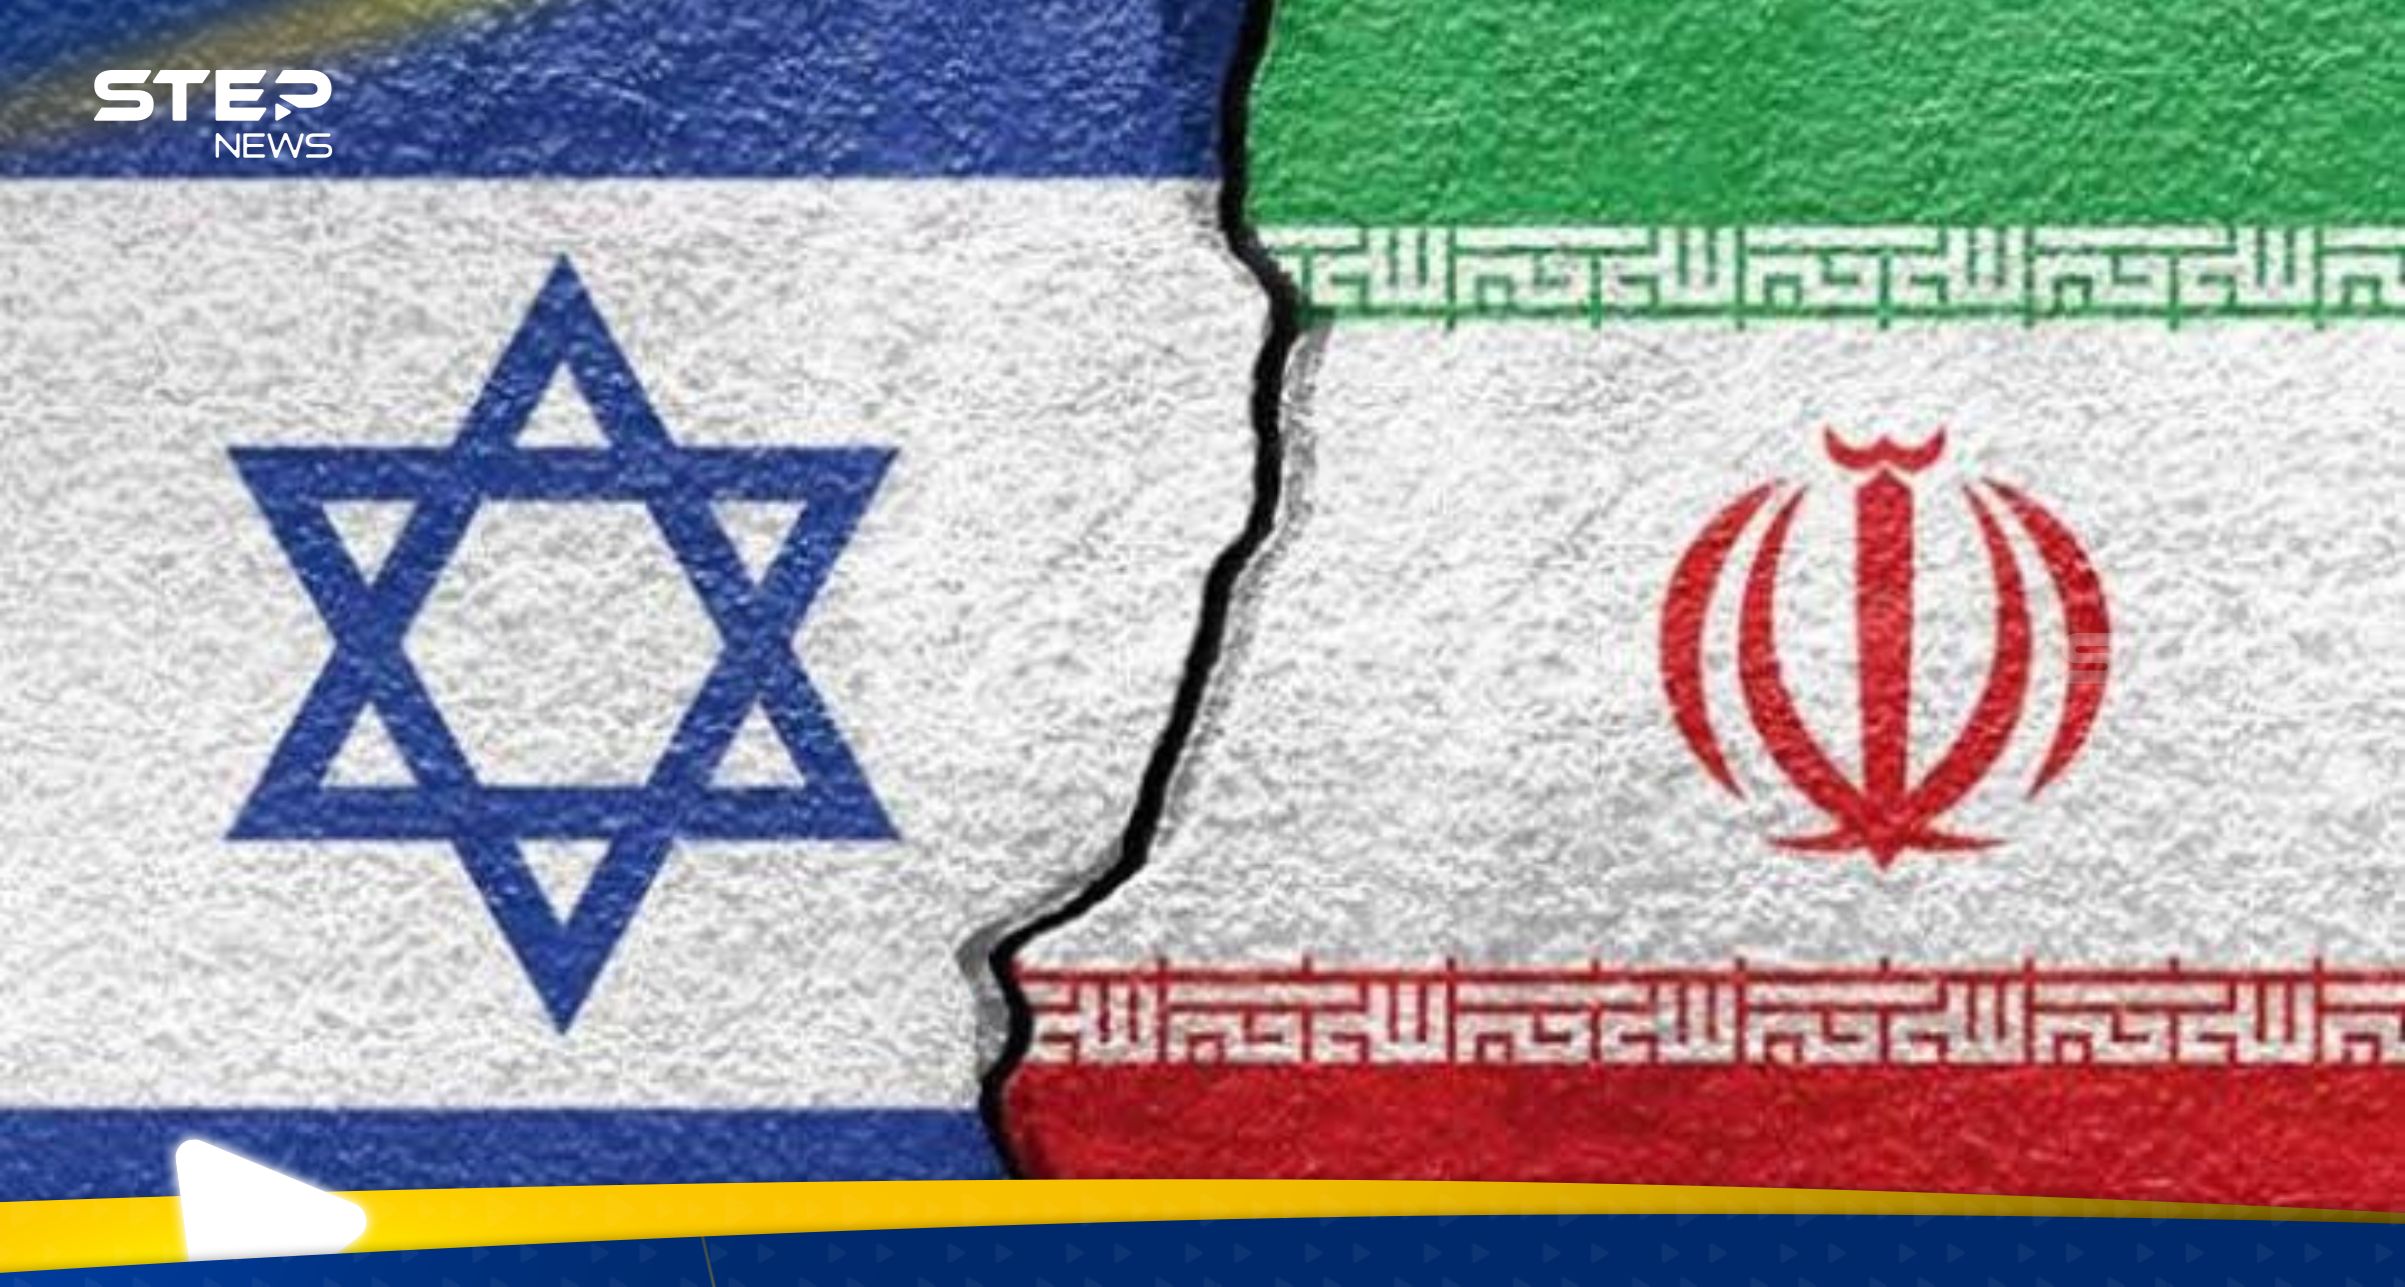 إسرائيل تعلن إحباط مخطط إيراني.. وصحيفة تكشف الخفايا